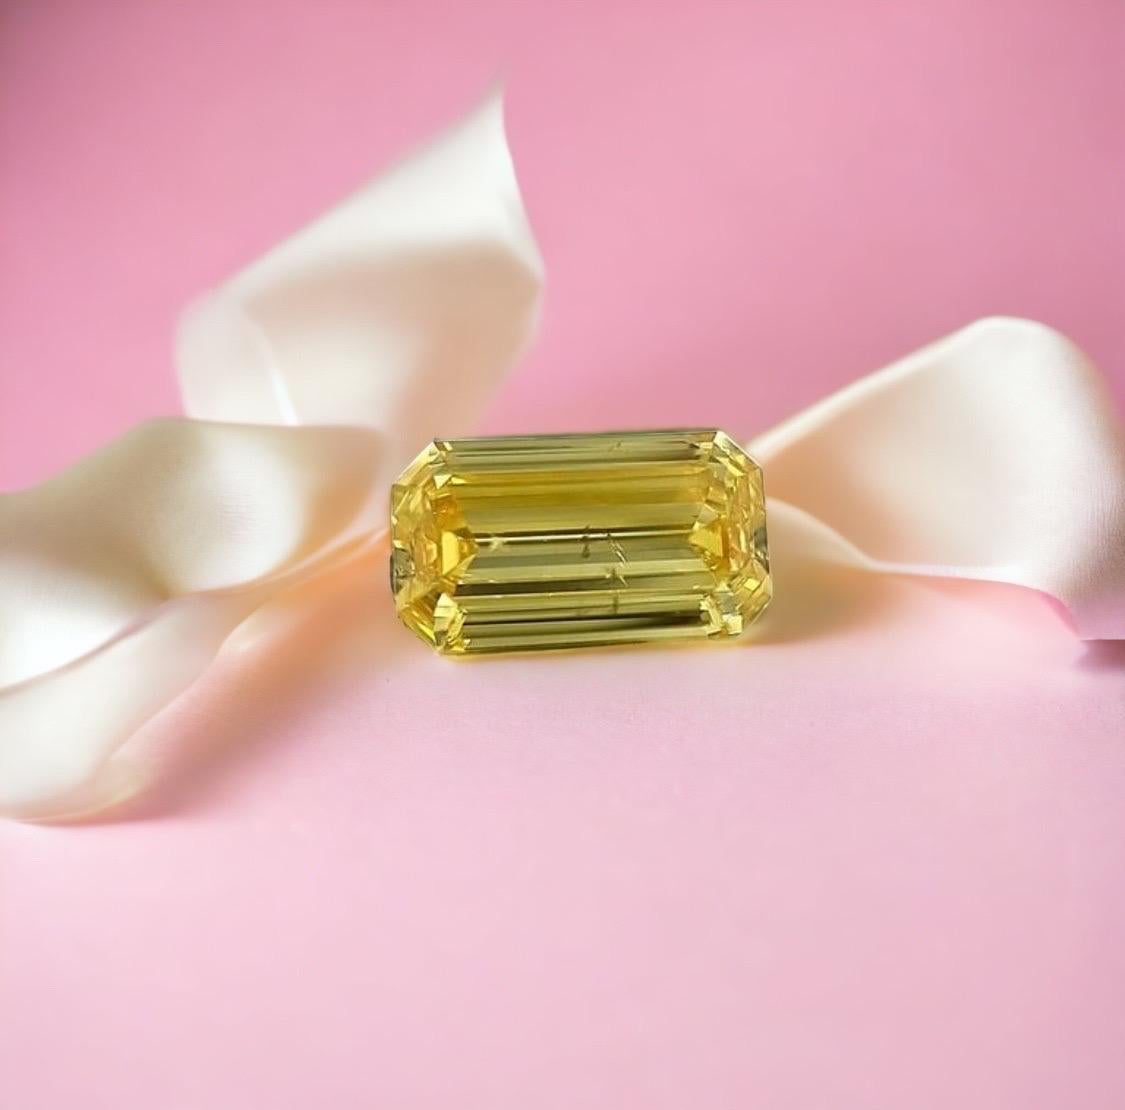 Rare diamant naturel jaune vif de 1,08 carat taille émeraude, une forme rare dans un diamant de plus de 1,00 carat, beaucoup plus rare que le diamant incolore et super rare de Zimmi surtout avec une grande intensité de couleur ou de vivacité.